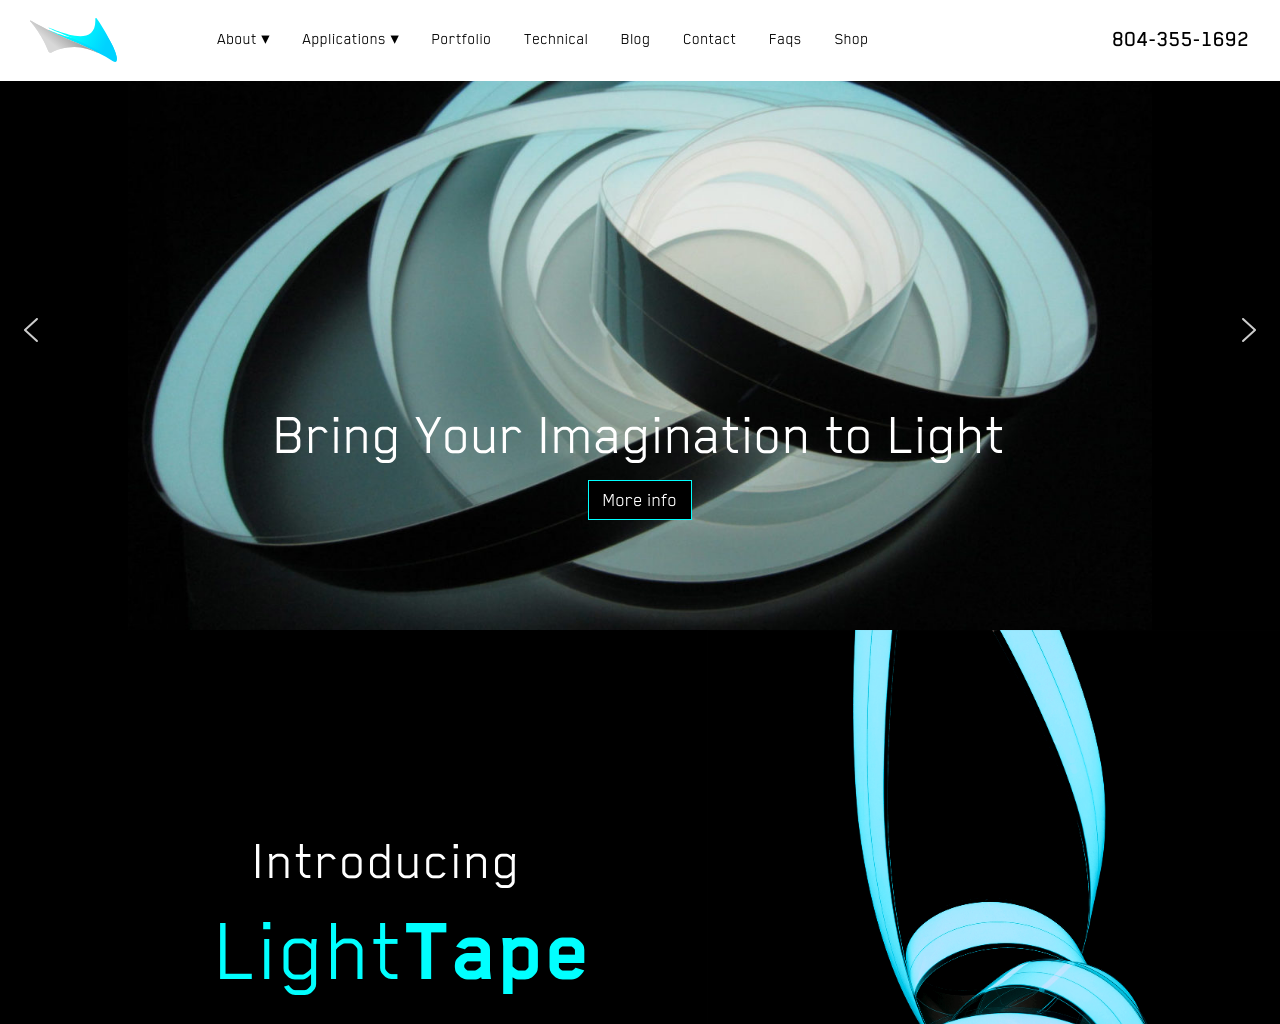 lighttape.com